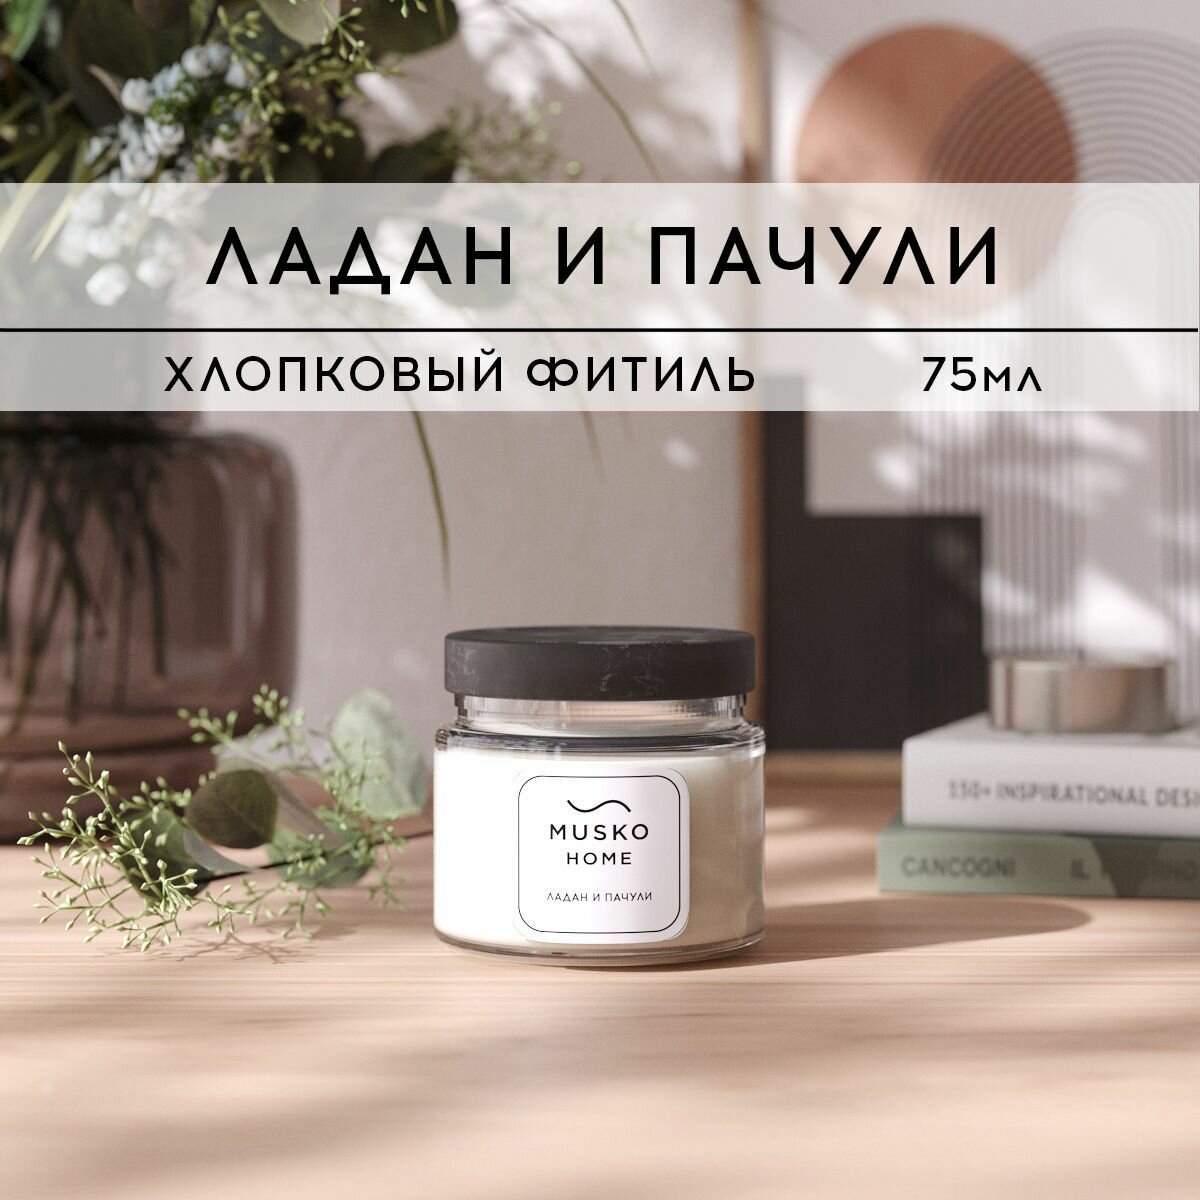 Свеча ароматическая MUSKO HOME - Ладан и пачули, 75 мл, натуральный соевый воск, хлопковый фитиль